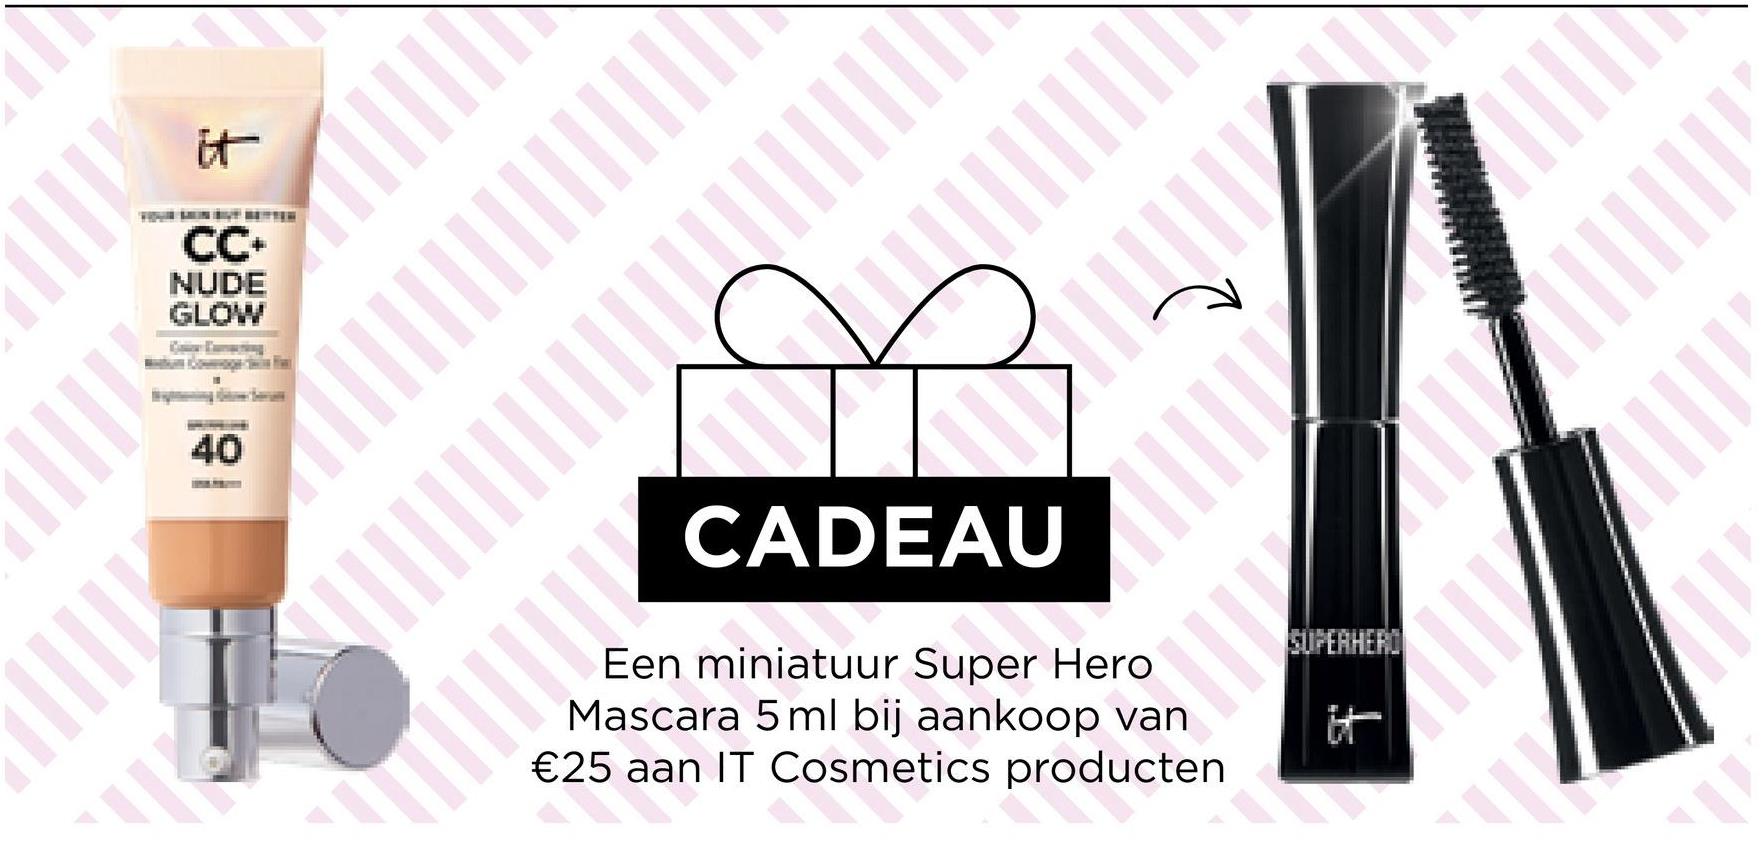 ||||
it
CC+
NUDE
GLOW
I
40
CADEAU
Een miniatuur Super Hero
Mascara 5 ml bij aankoop van
€25 aan IT Cosmetics producten
25 aa
PIT
SUPERHERO
✓
ll